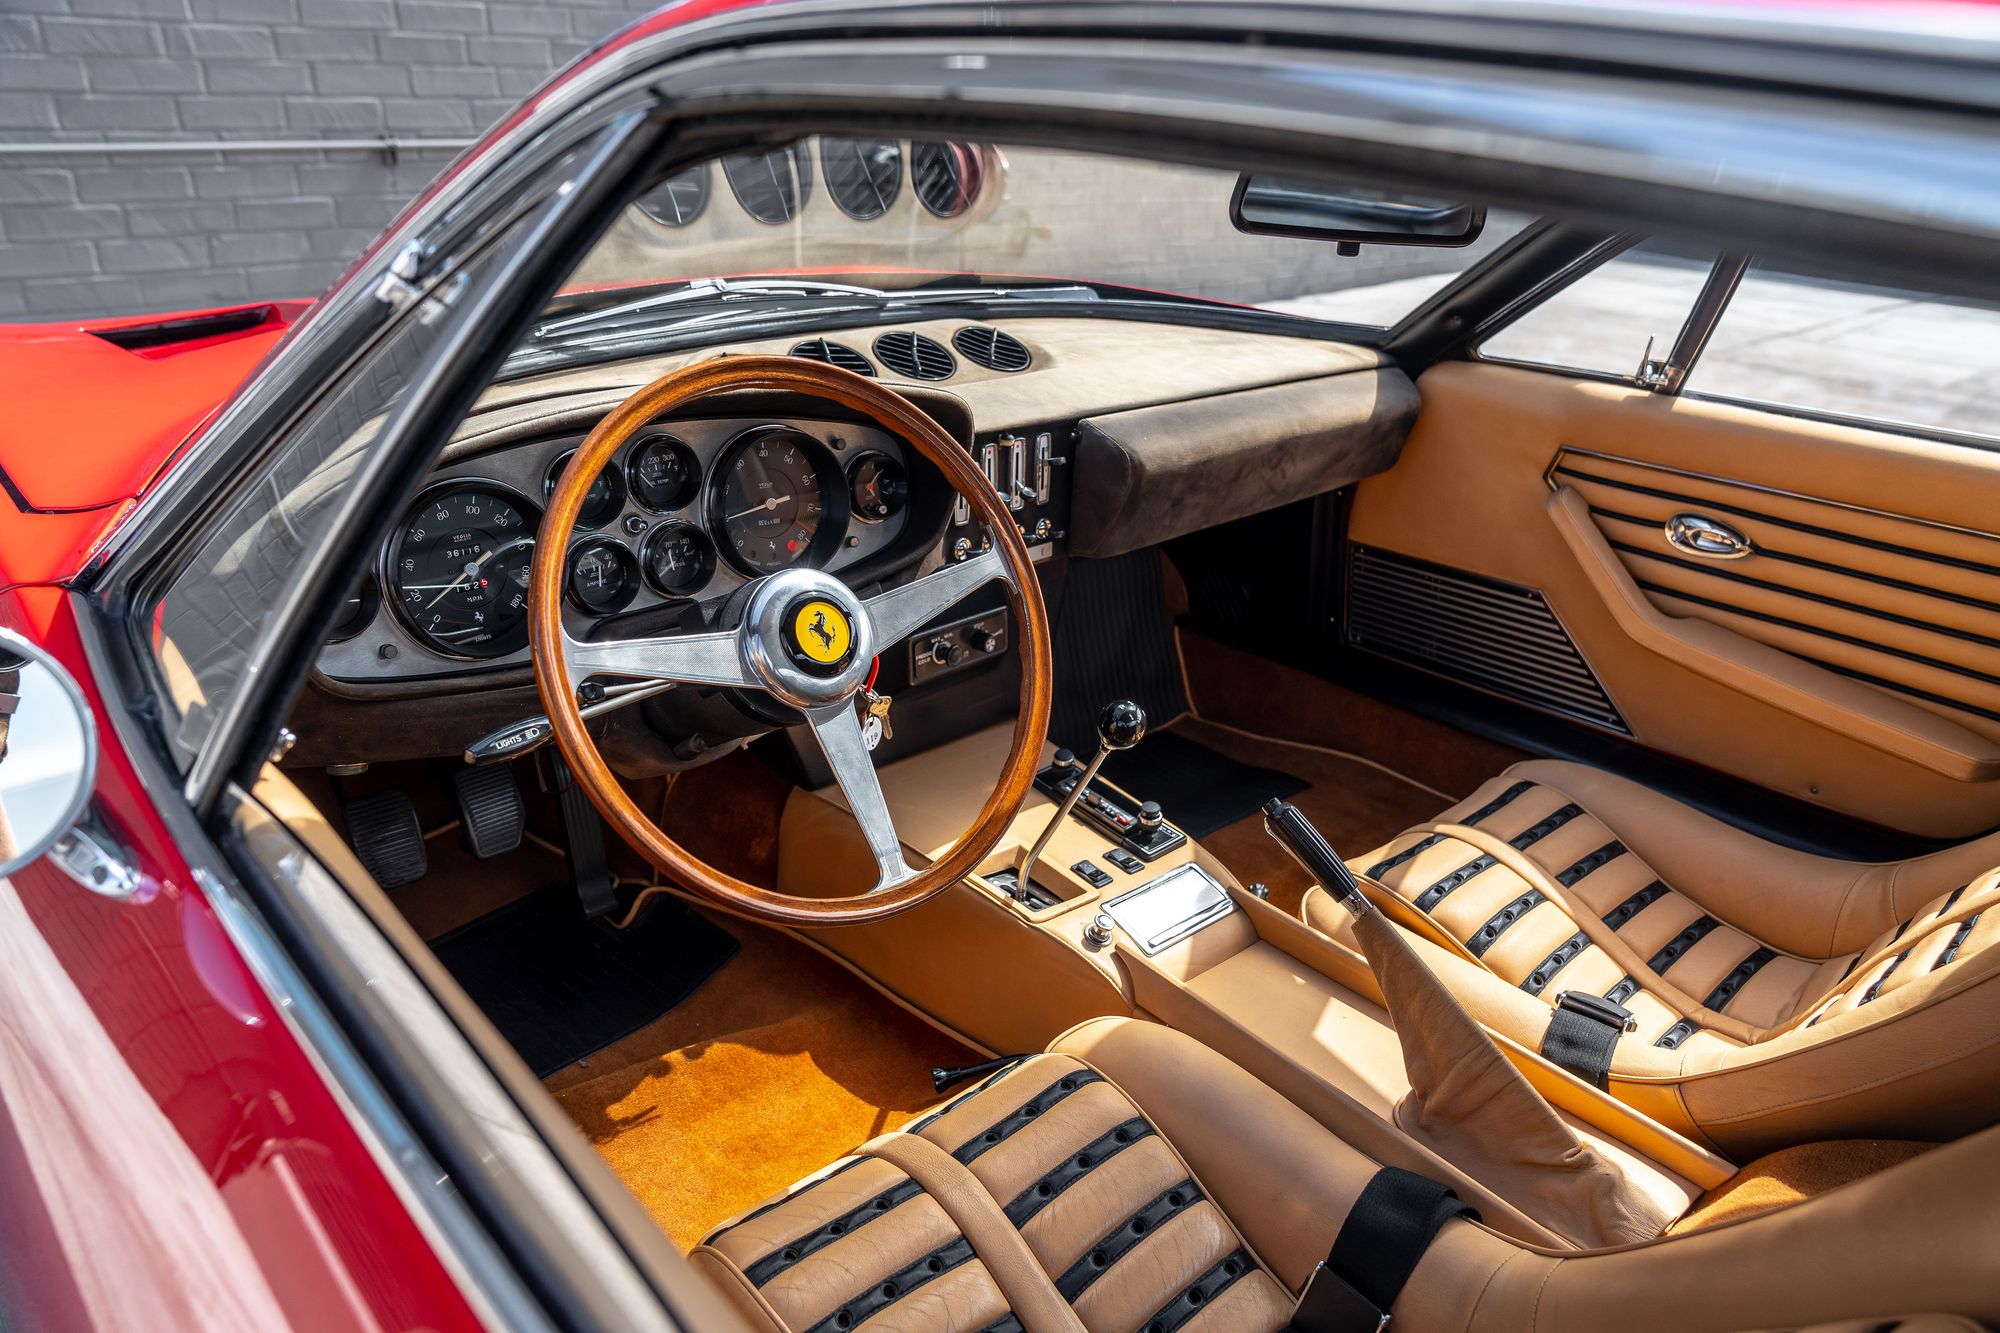 1971 Ferrari 365 GTB/4 Daytona